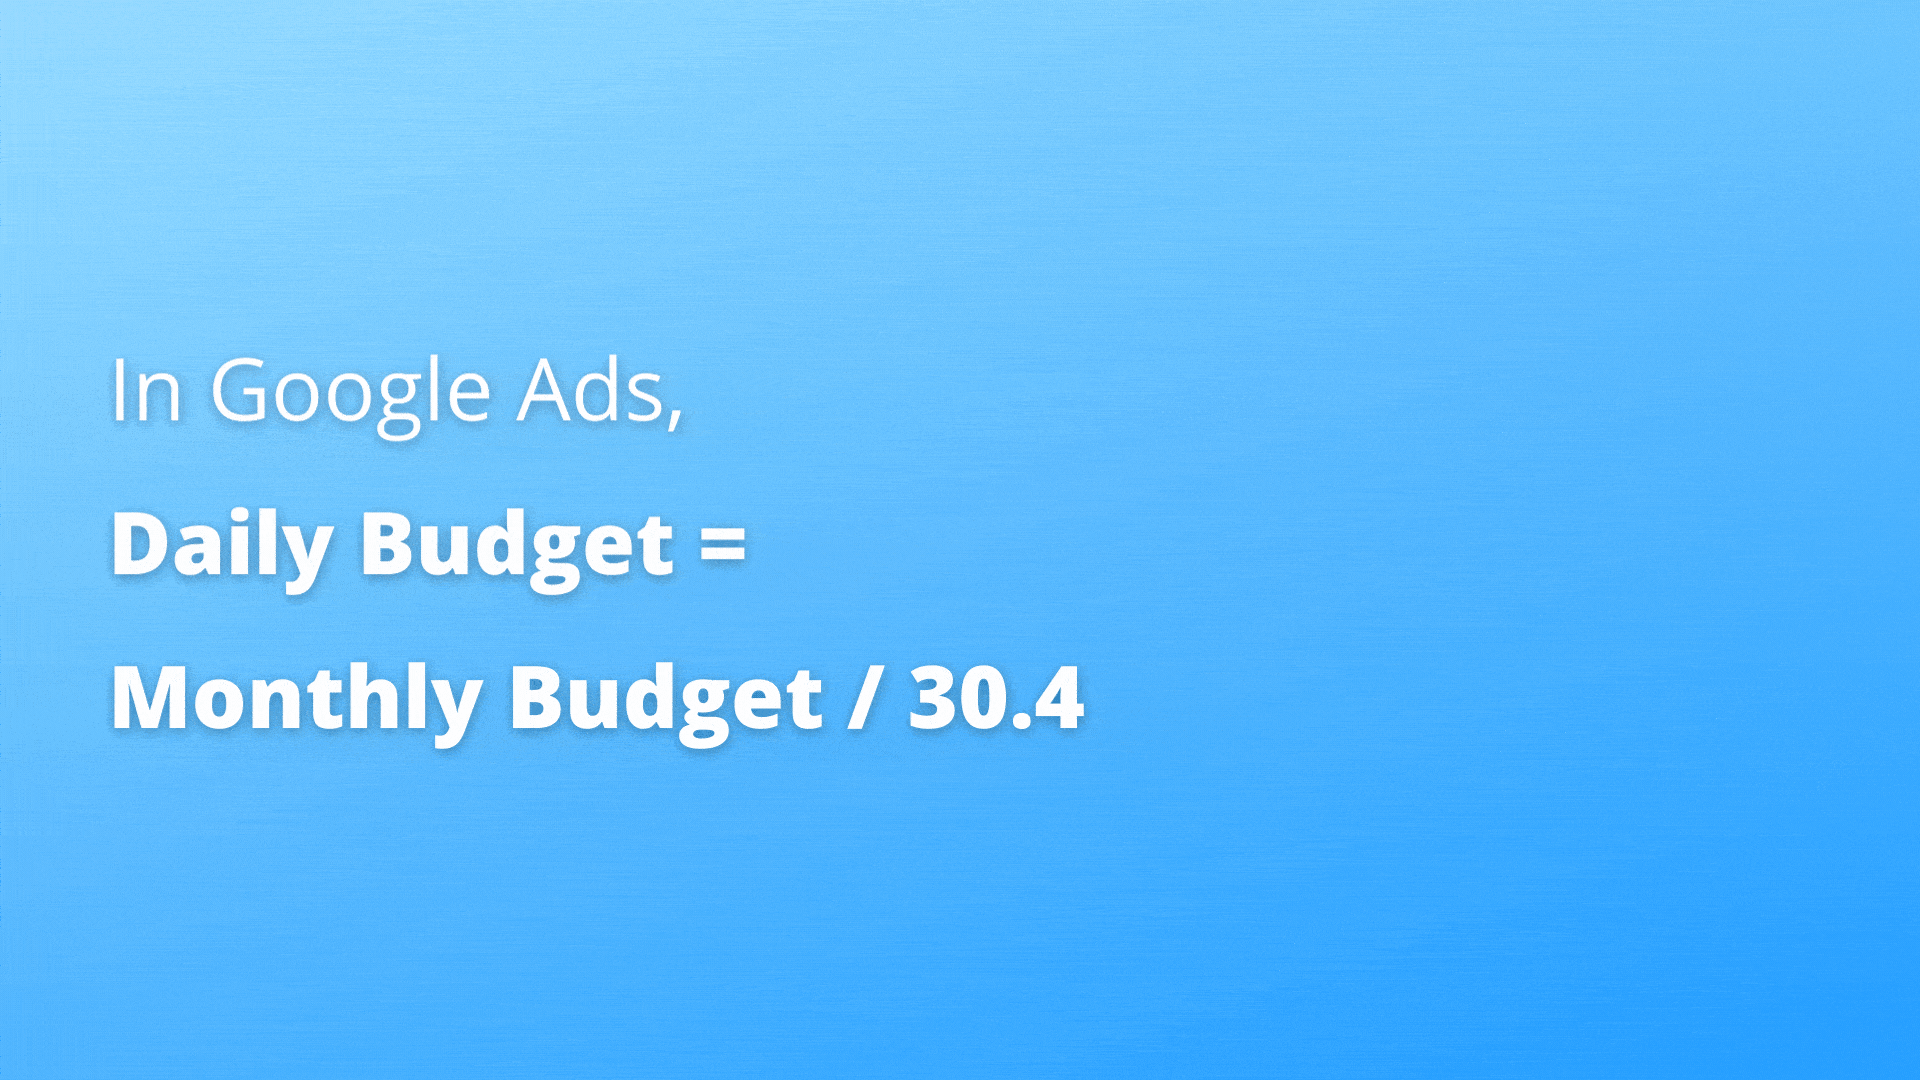 Google Ads daily budget formula